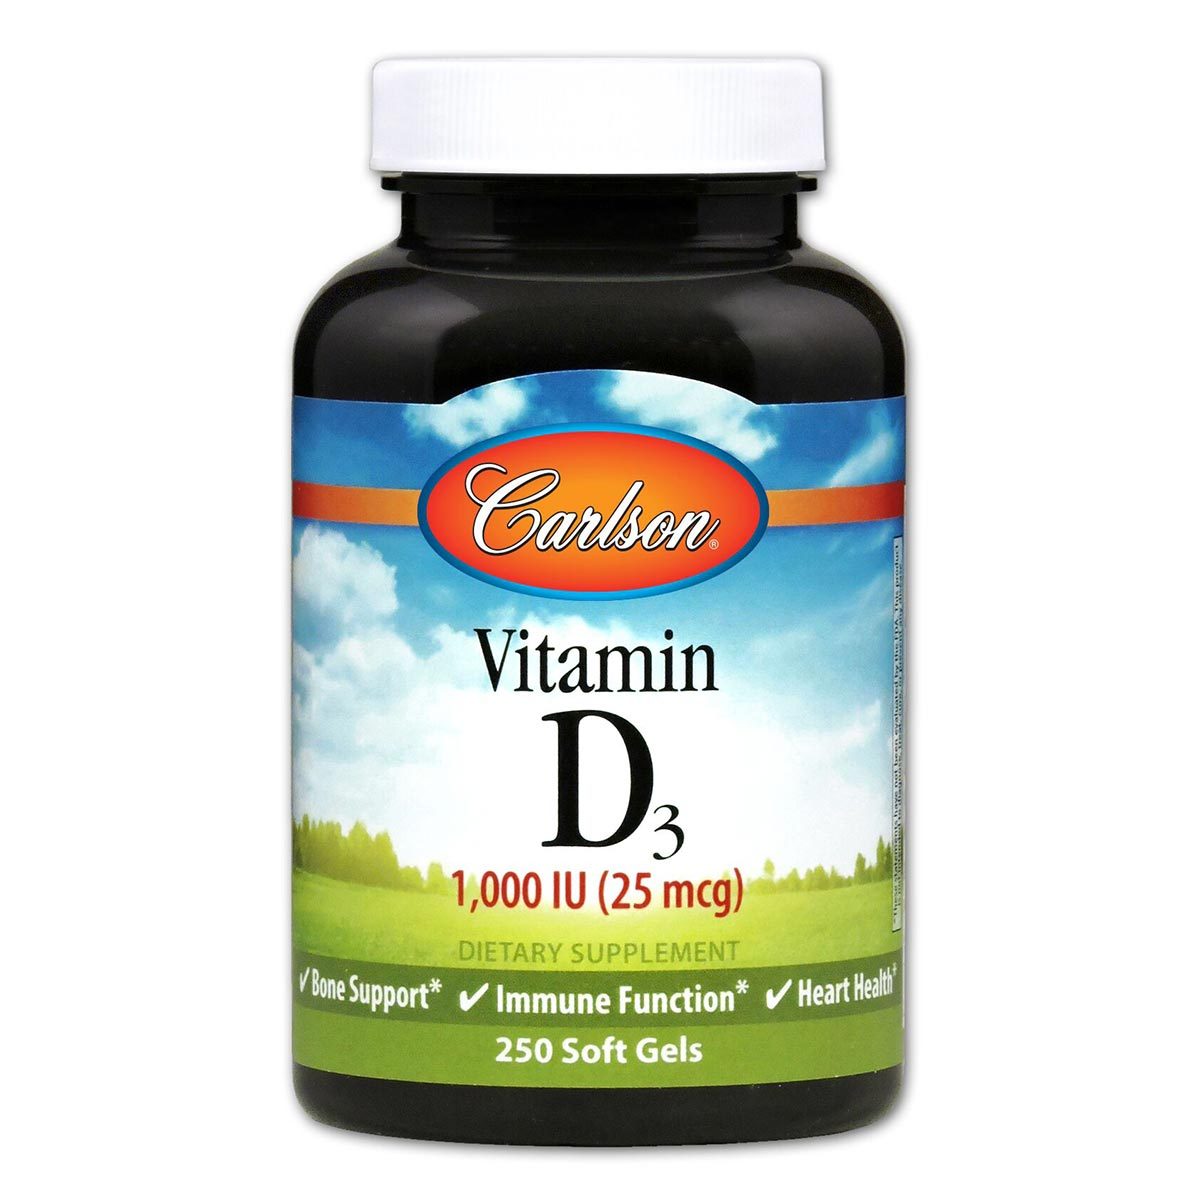 Primary image of Vitamin D3 1,000IU